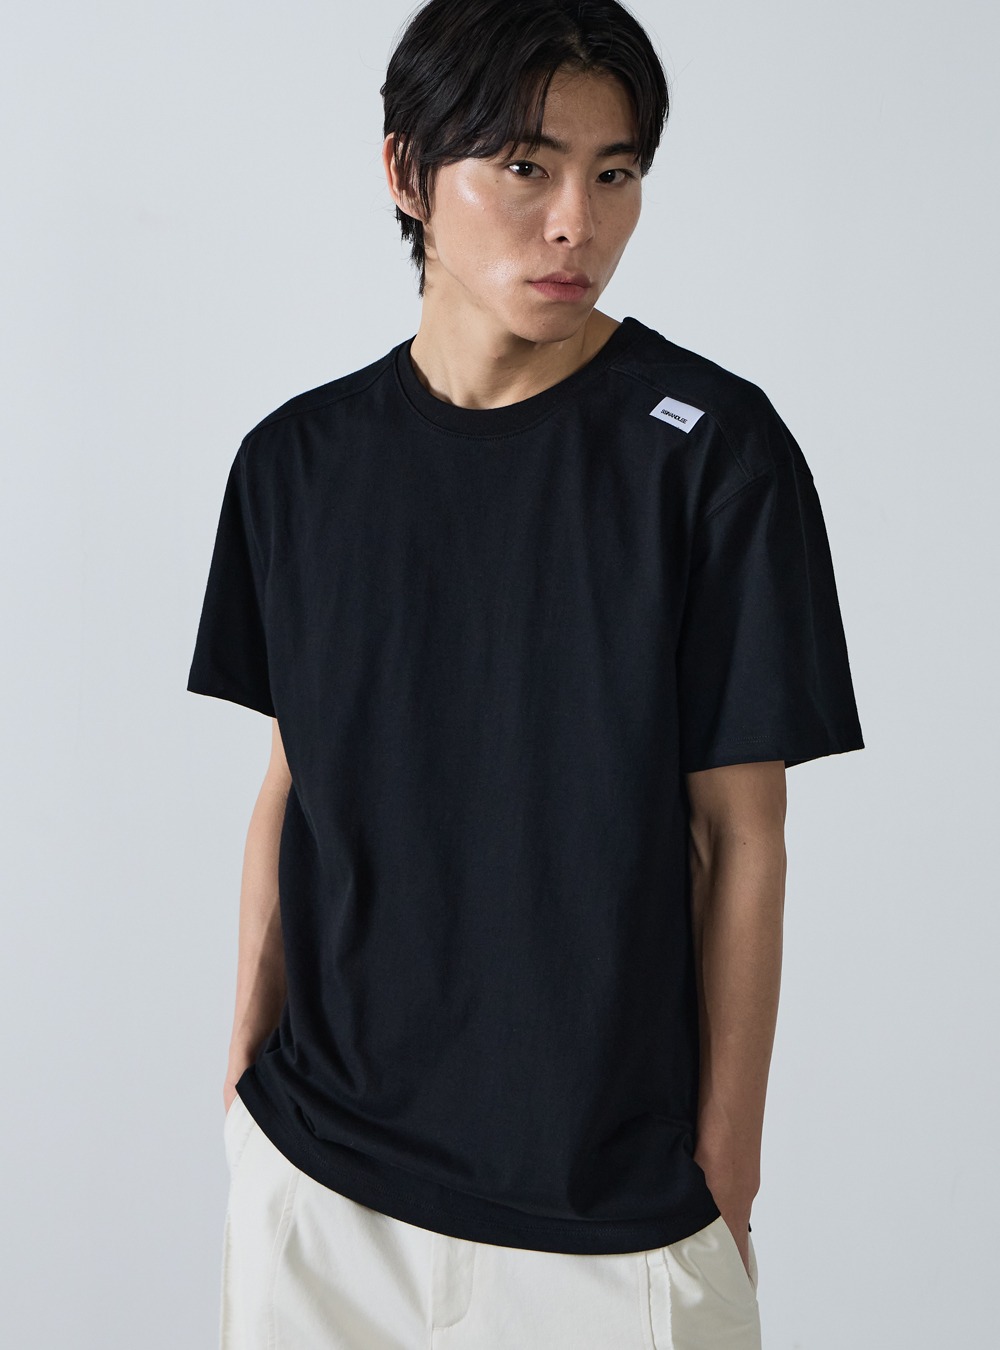 에센셜 숄더 라벨 티셔츠 블랙Essential shoulder label T-shirt black